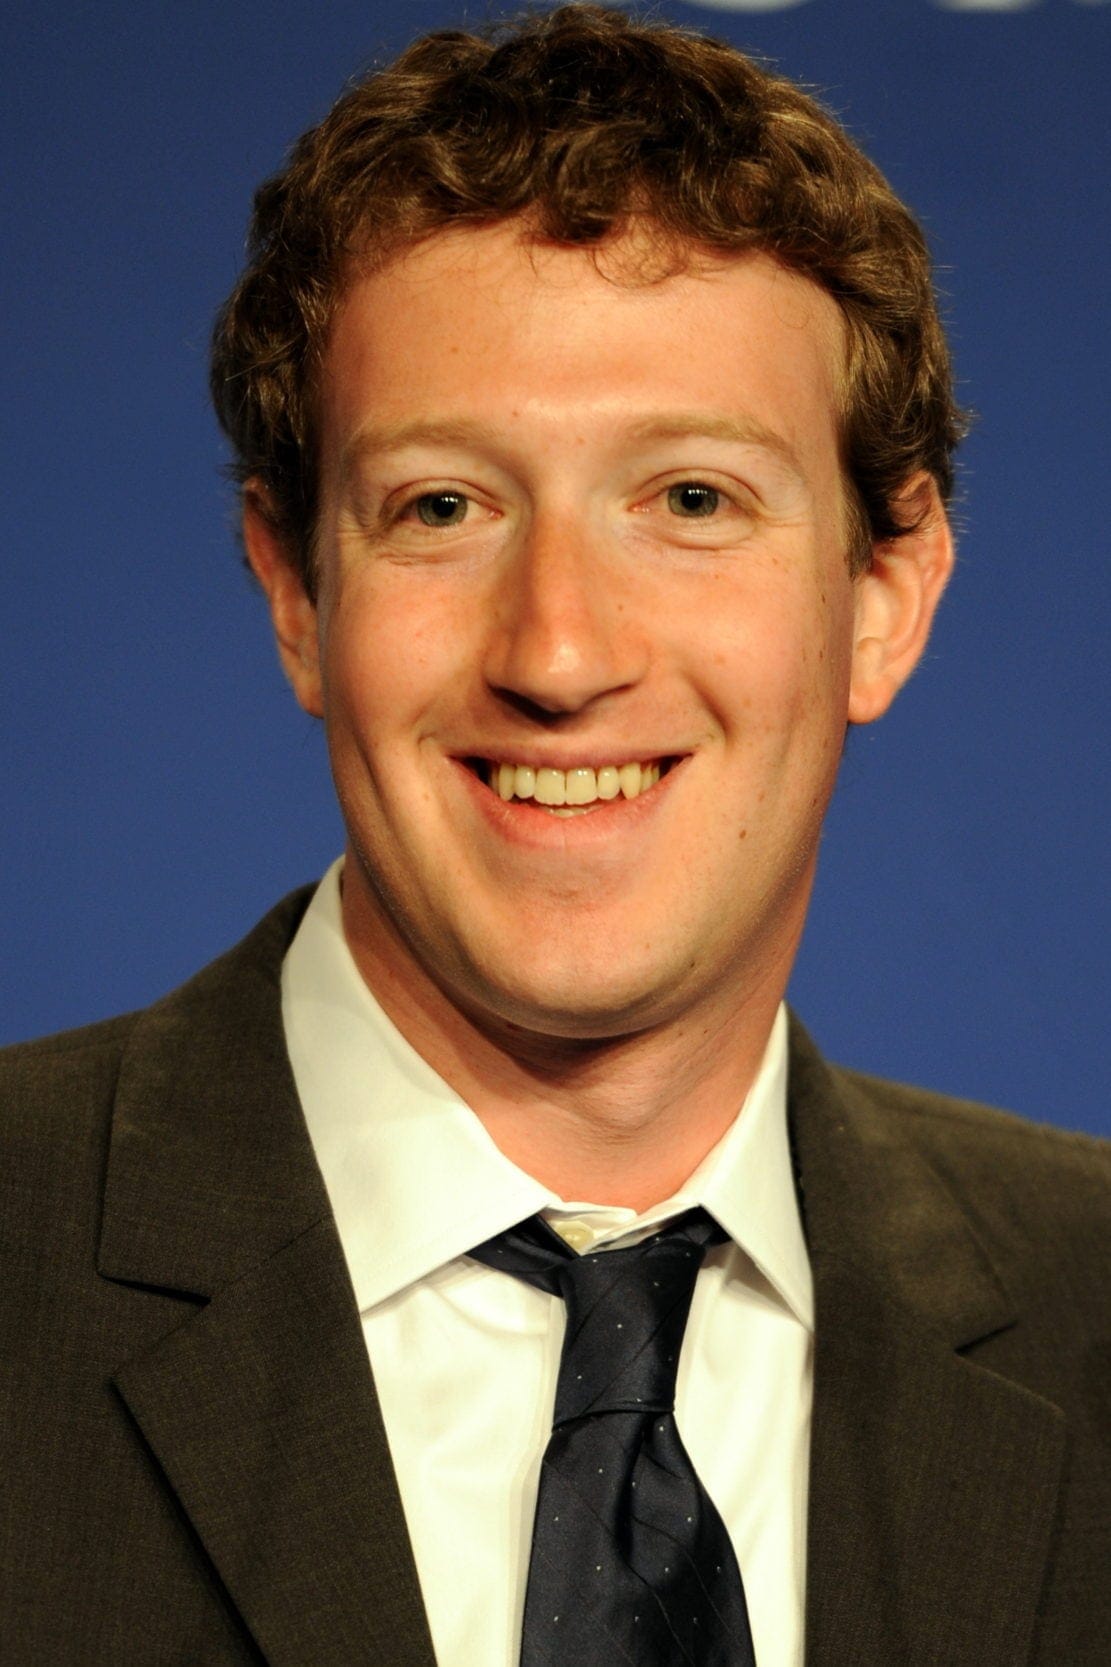 Mark Zuckerberg at the 37th G8 Summit in Deauville 018 v1 2017032117 58d1668352da3 e1490212264795